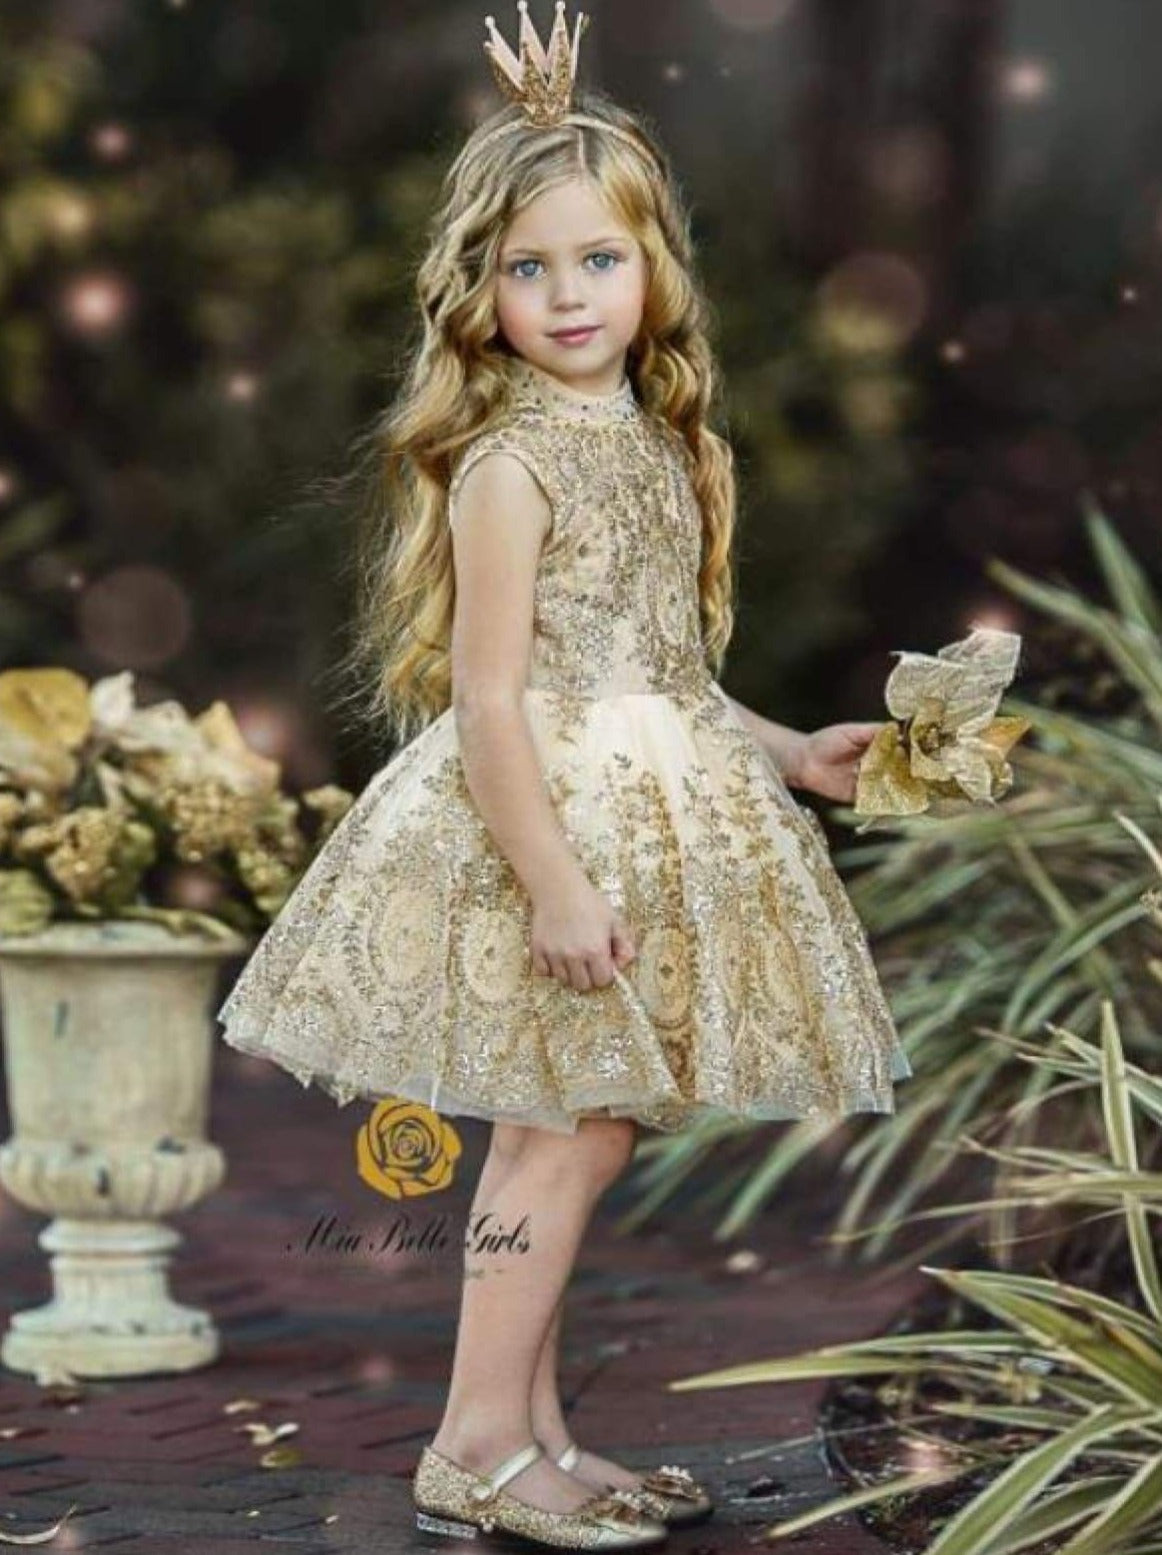 girls gold glitter dress